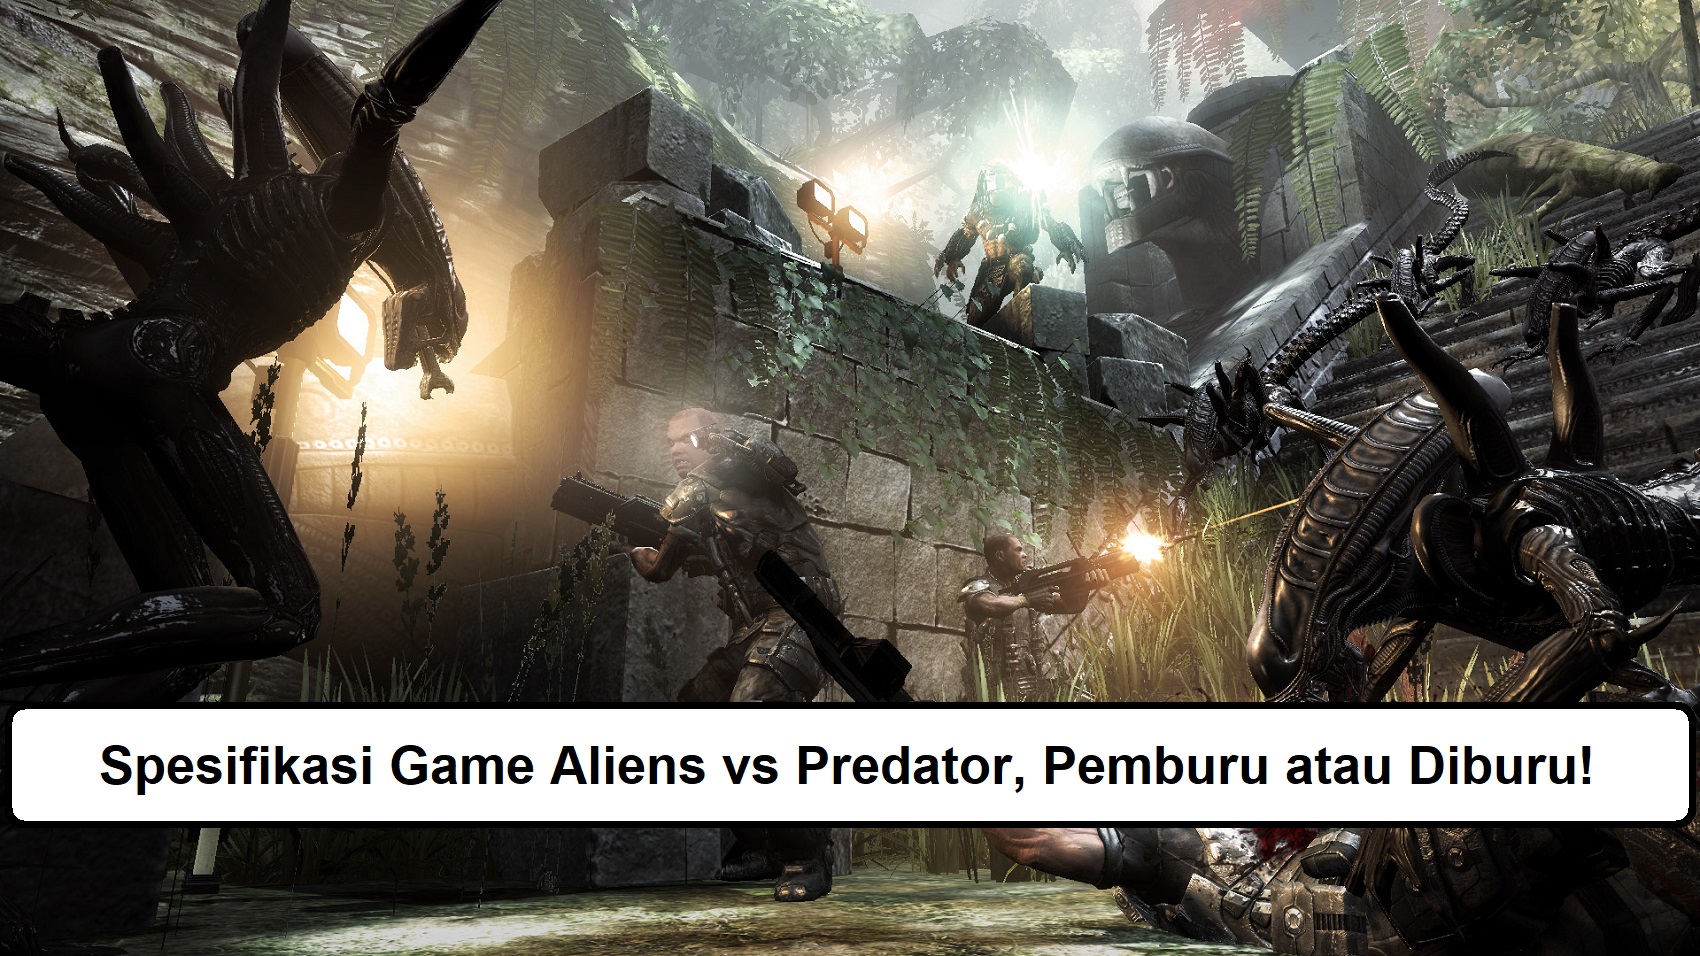 Spesifikasi Game Aliens vs Predator, Pemburu atau Diburu!